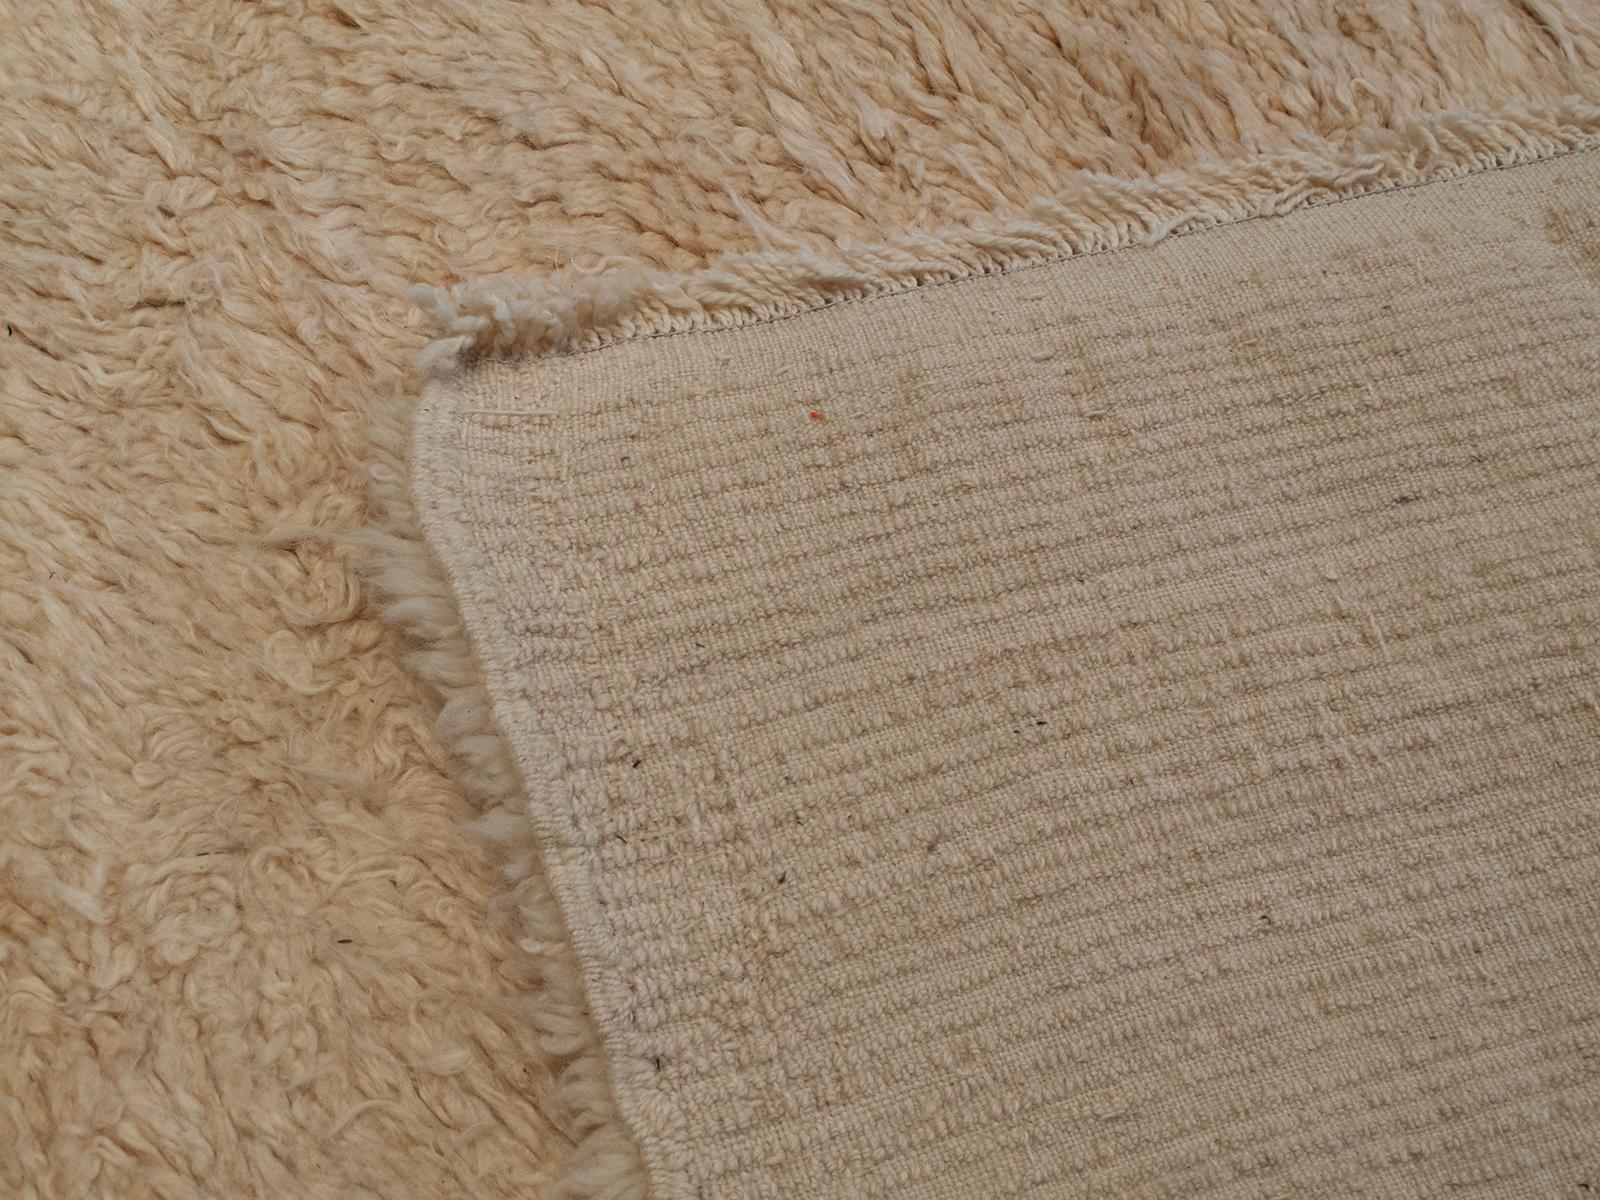 Wool “Shepherd’s Tulu” (DK-124-92) For Sale